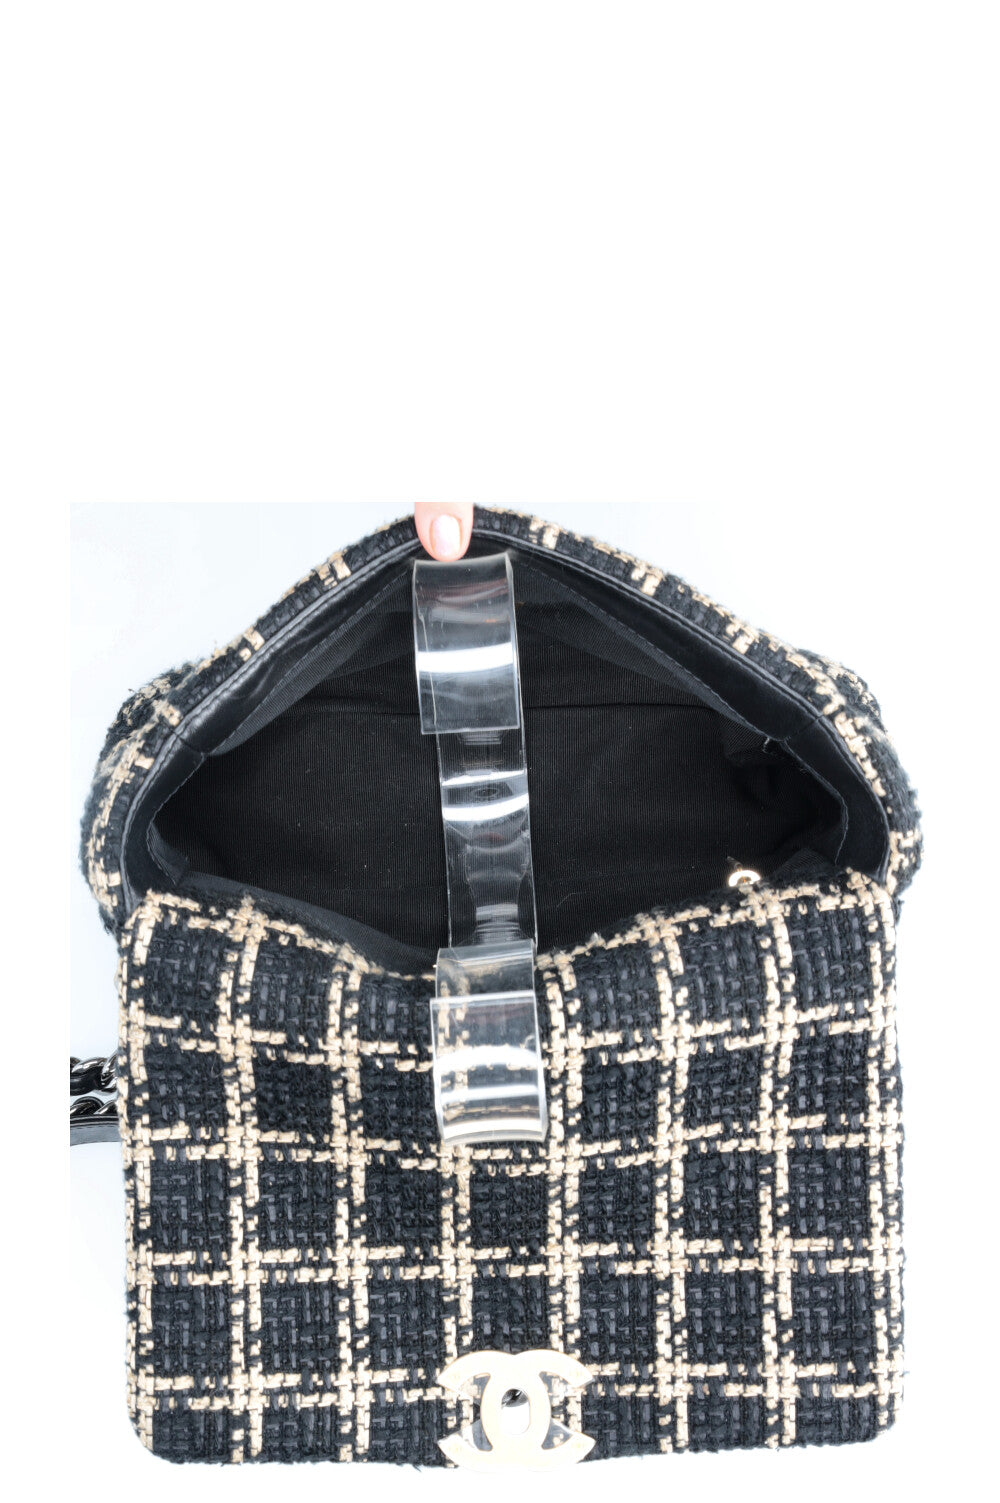 CHANEL 19 Medium Flap Bag Tweed Black & Beige